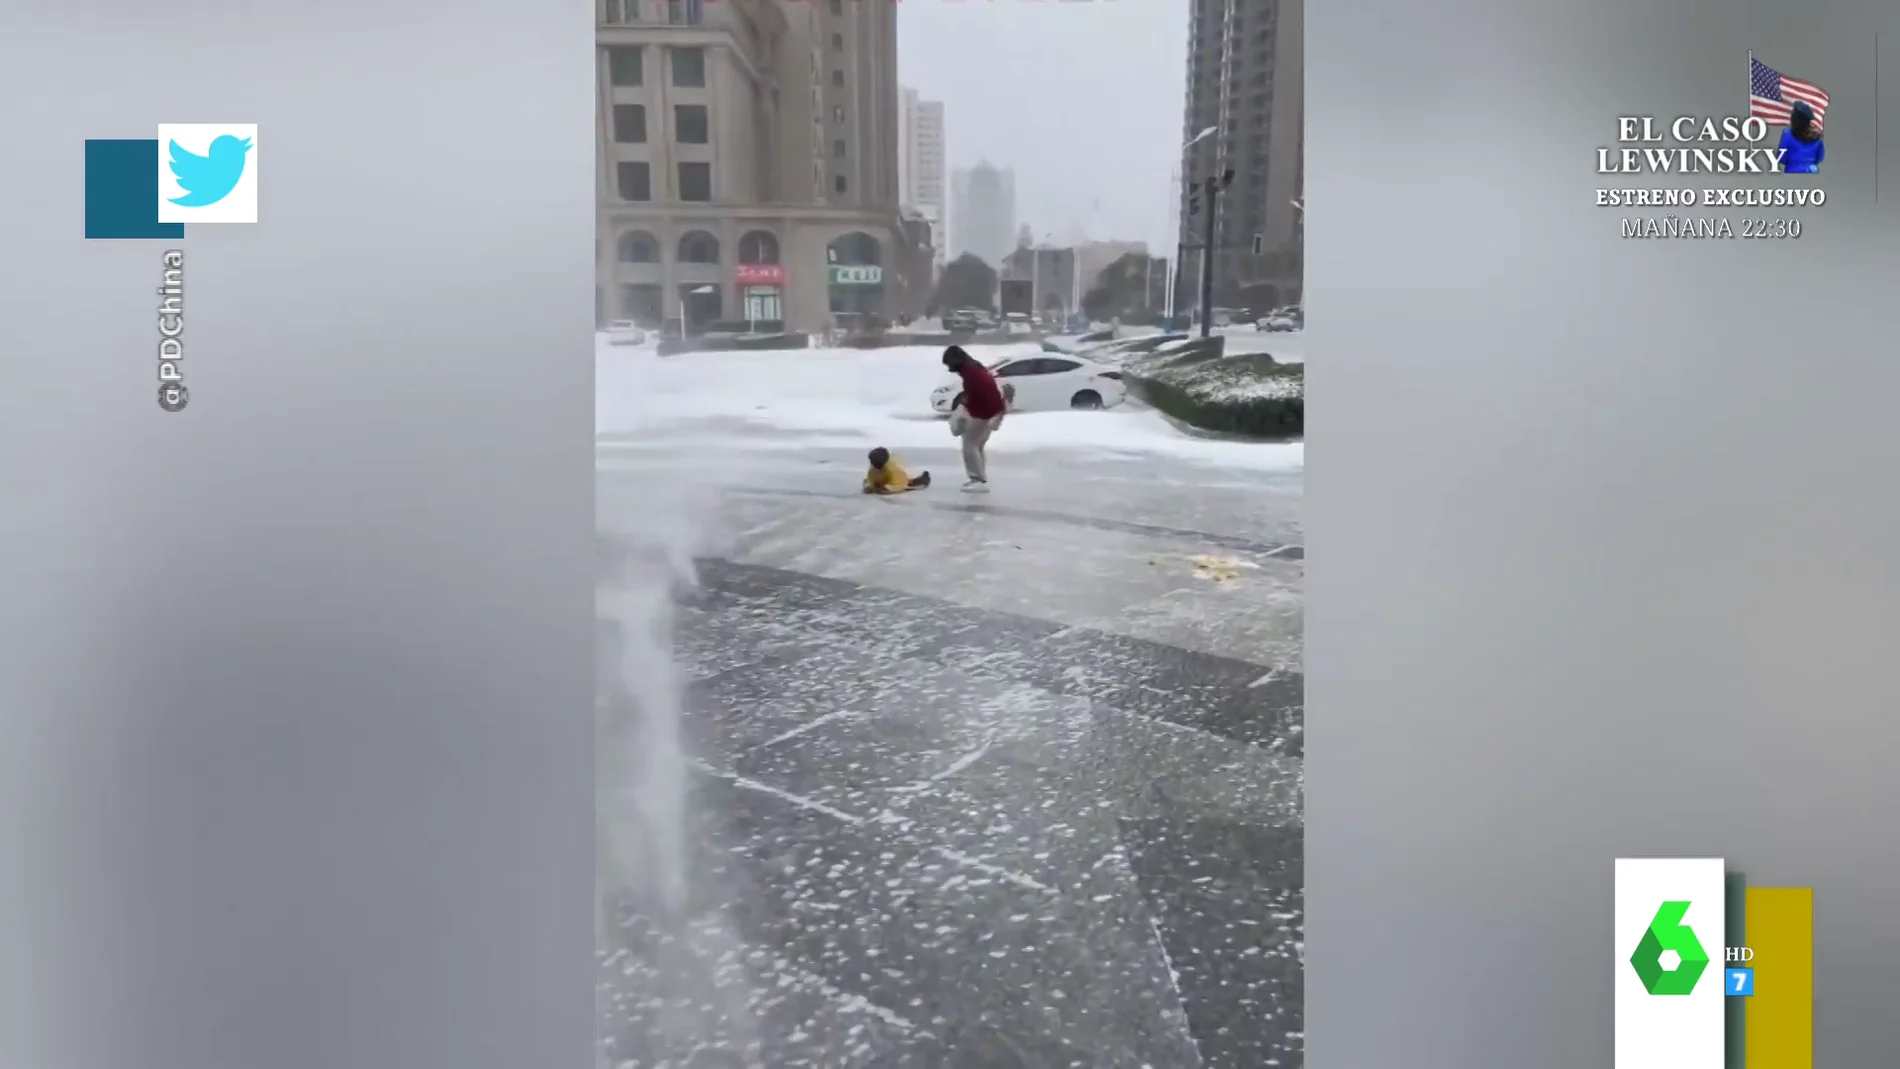 El increíble temporal de viento y hielo en China que mueve personas sin necesidad de andar